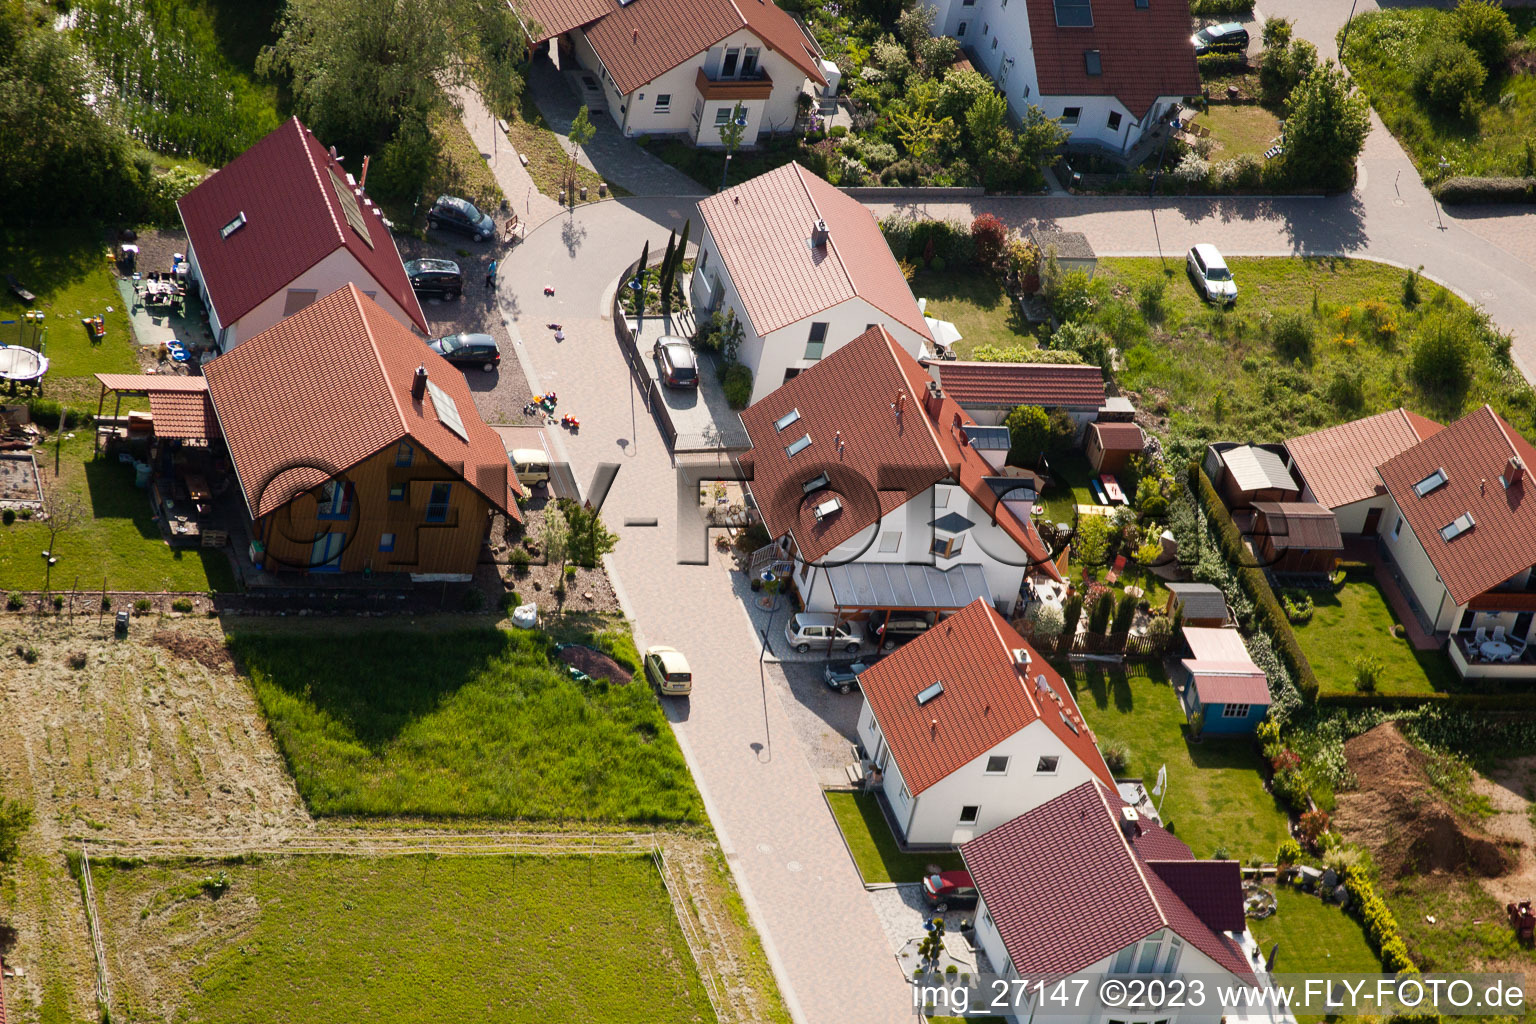 District Mörzheim in Landau in der Pfalz in the state Rhineland-Palatinate, Germany from a drone